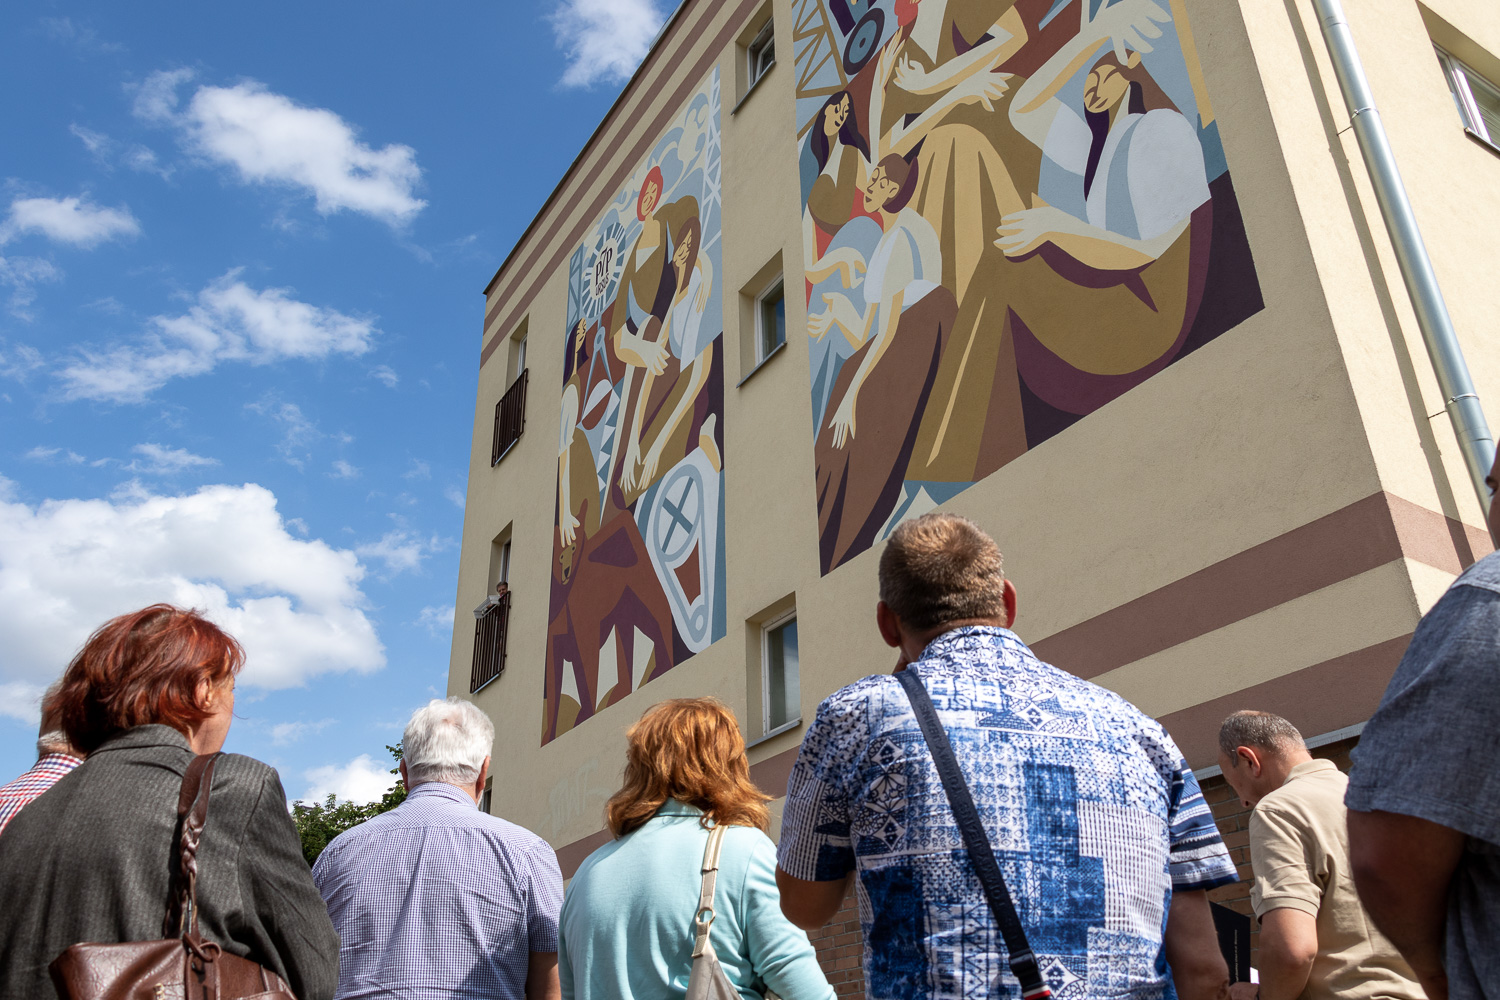 Siedem Panien Ursusa nowy mural w Warszawie